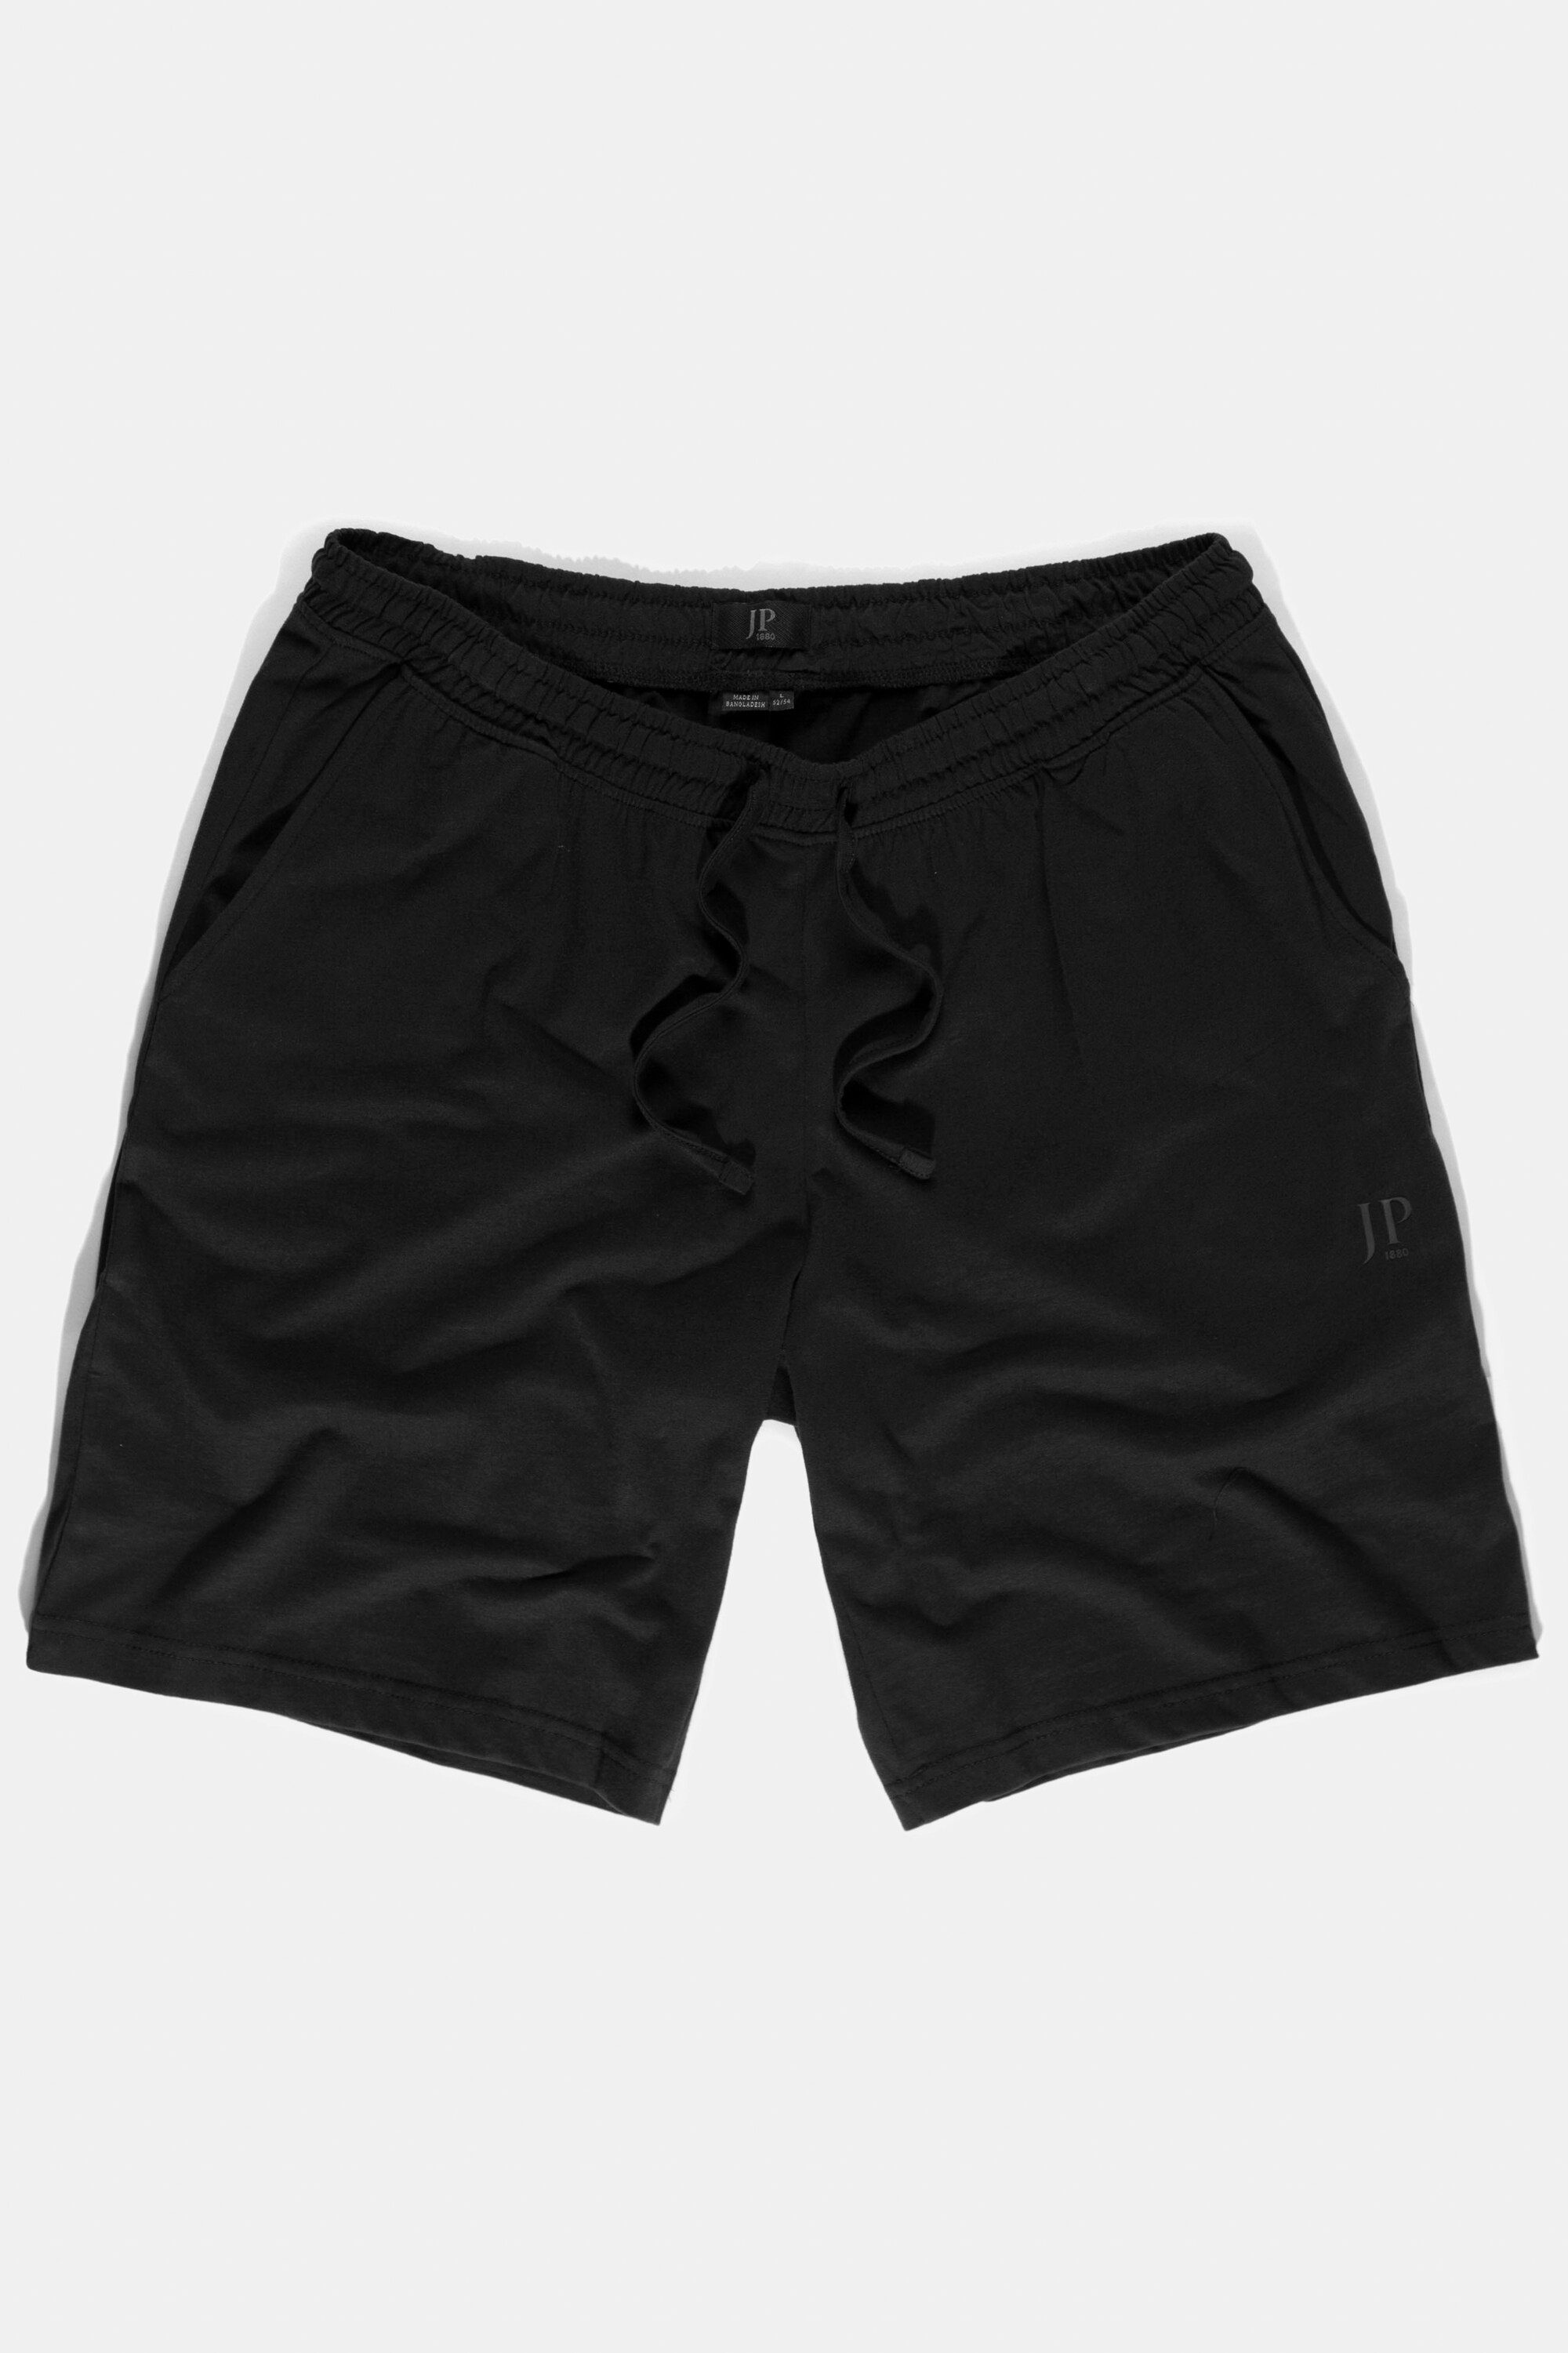 JP1880 schwarz Schlafanzug Homewear Schlafanzug Elastikbund Shorts Hose